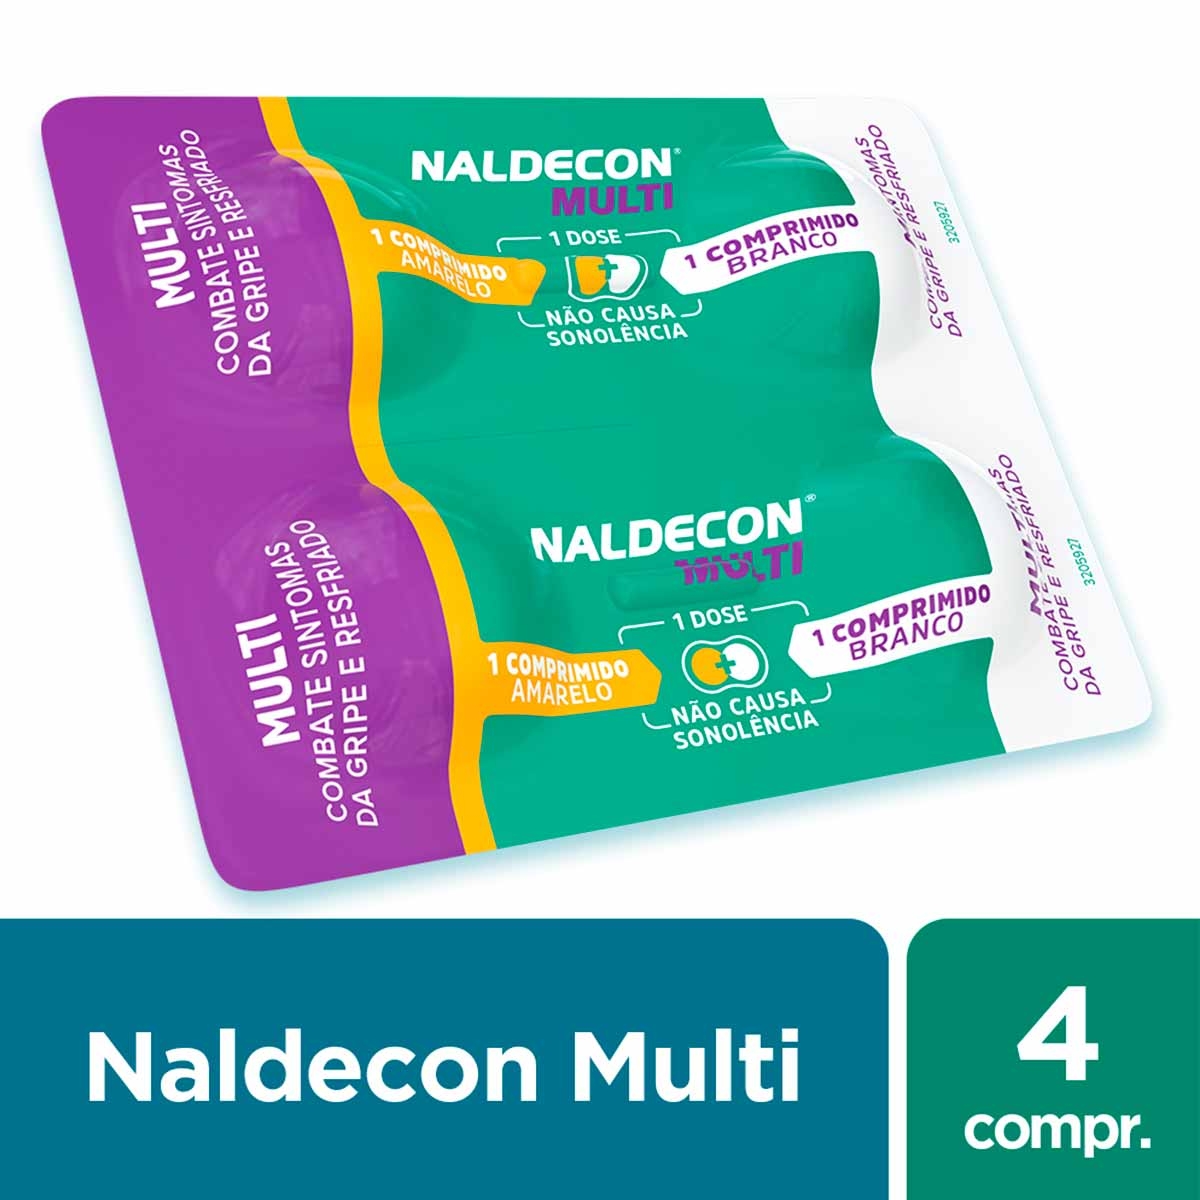 Naldecon Pack Dia e Noite 6 comprimidos com menor preço | Droga Raia